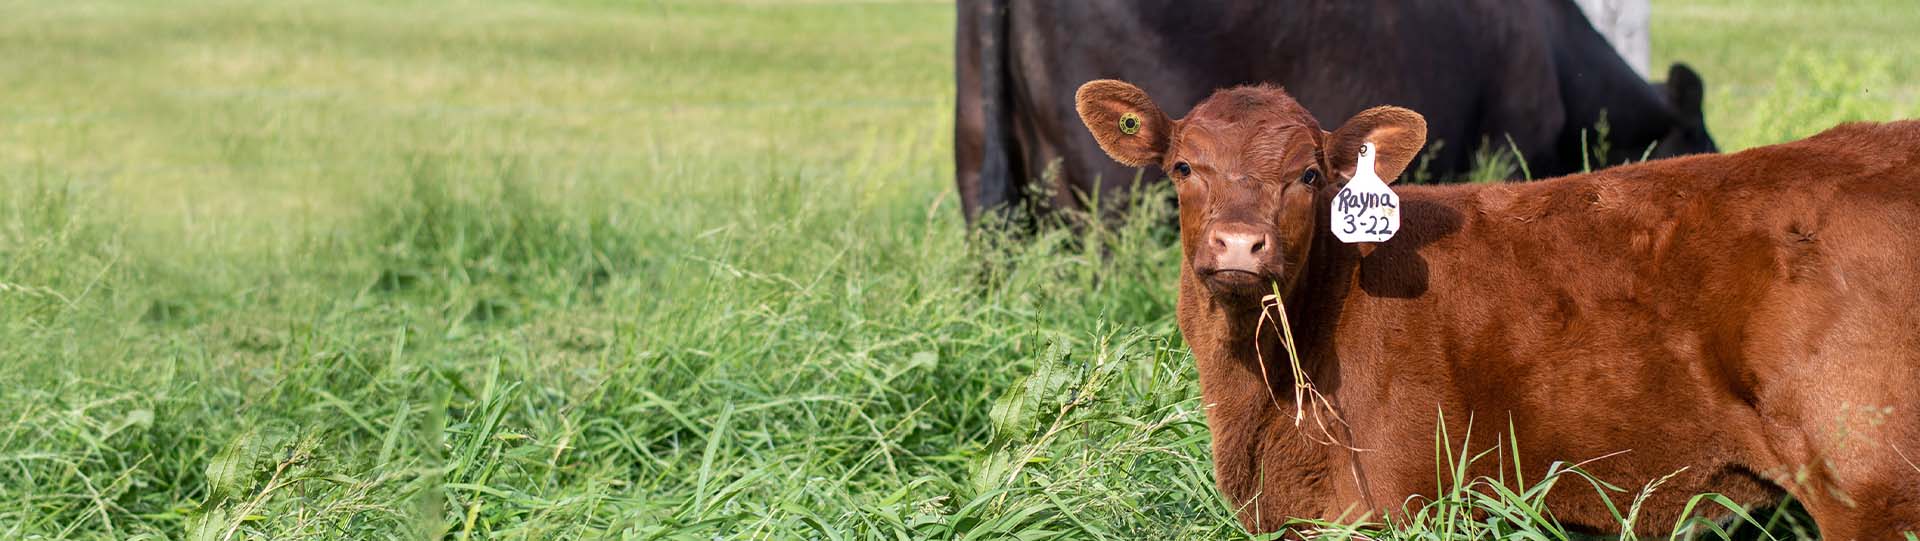 Beef calf on grass